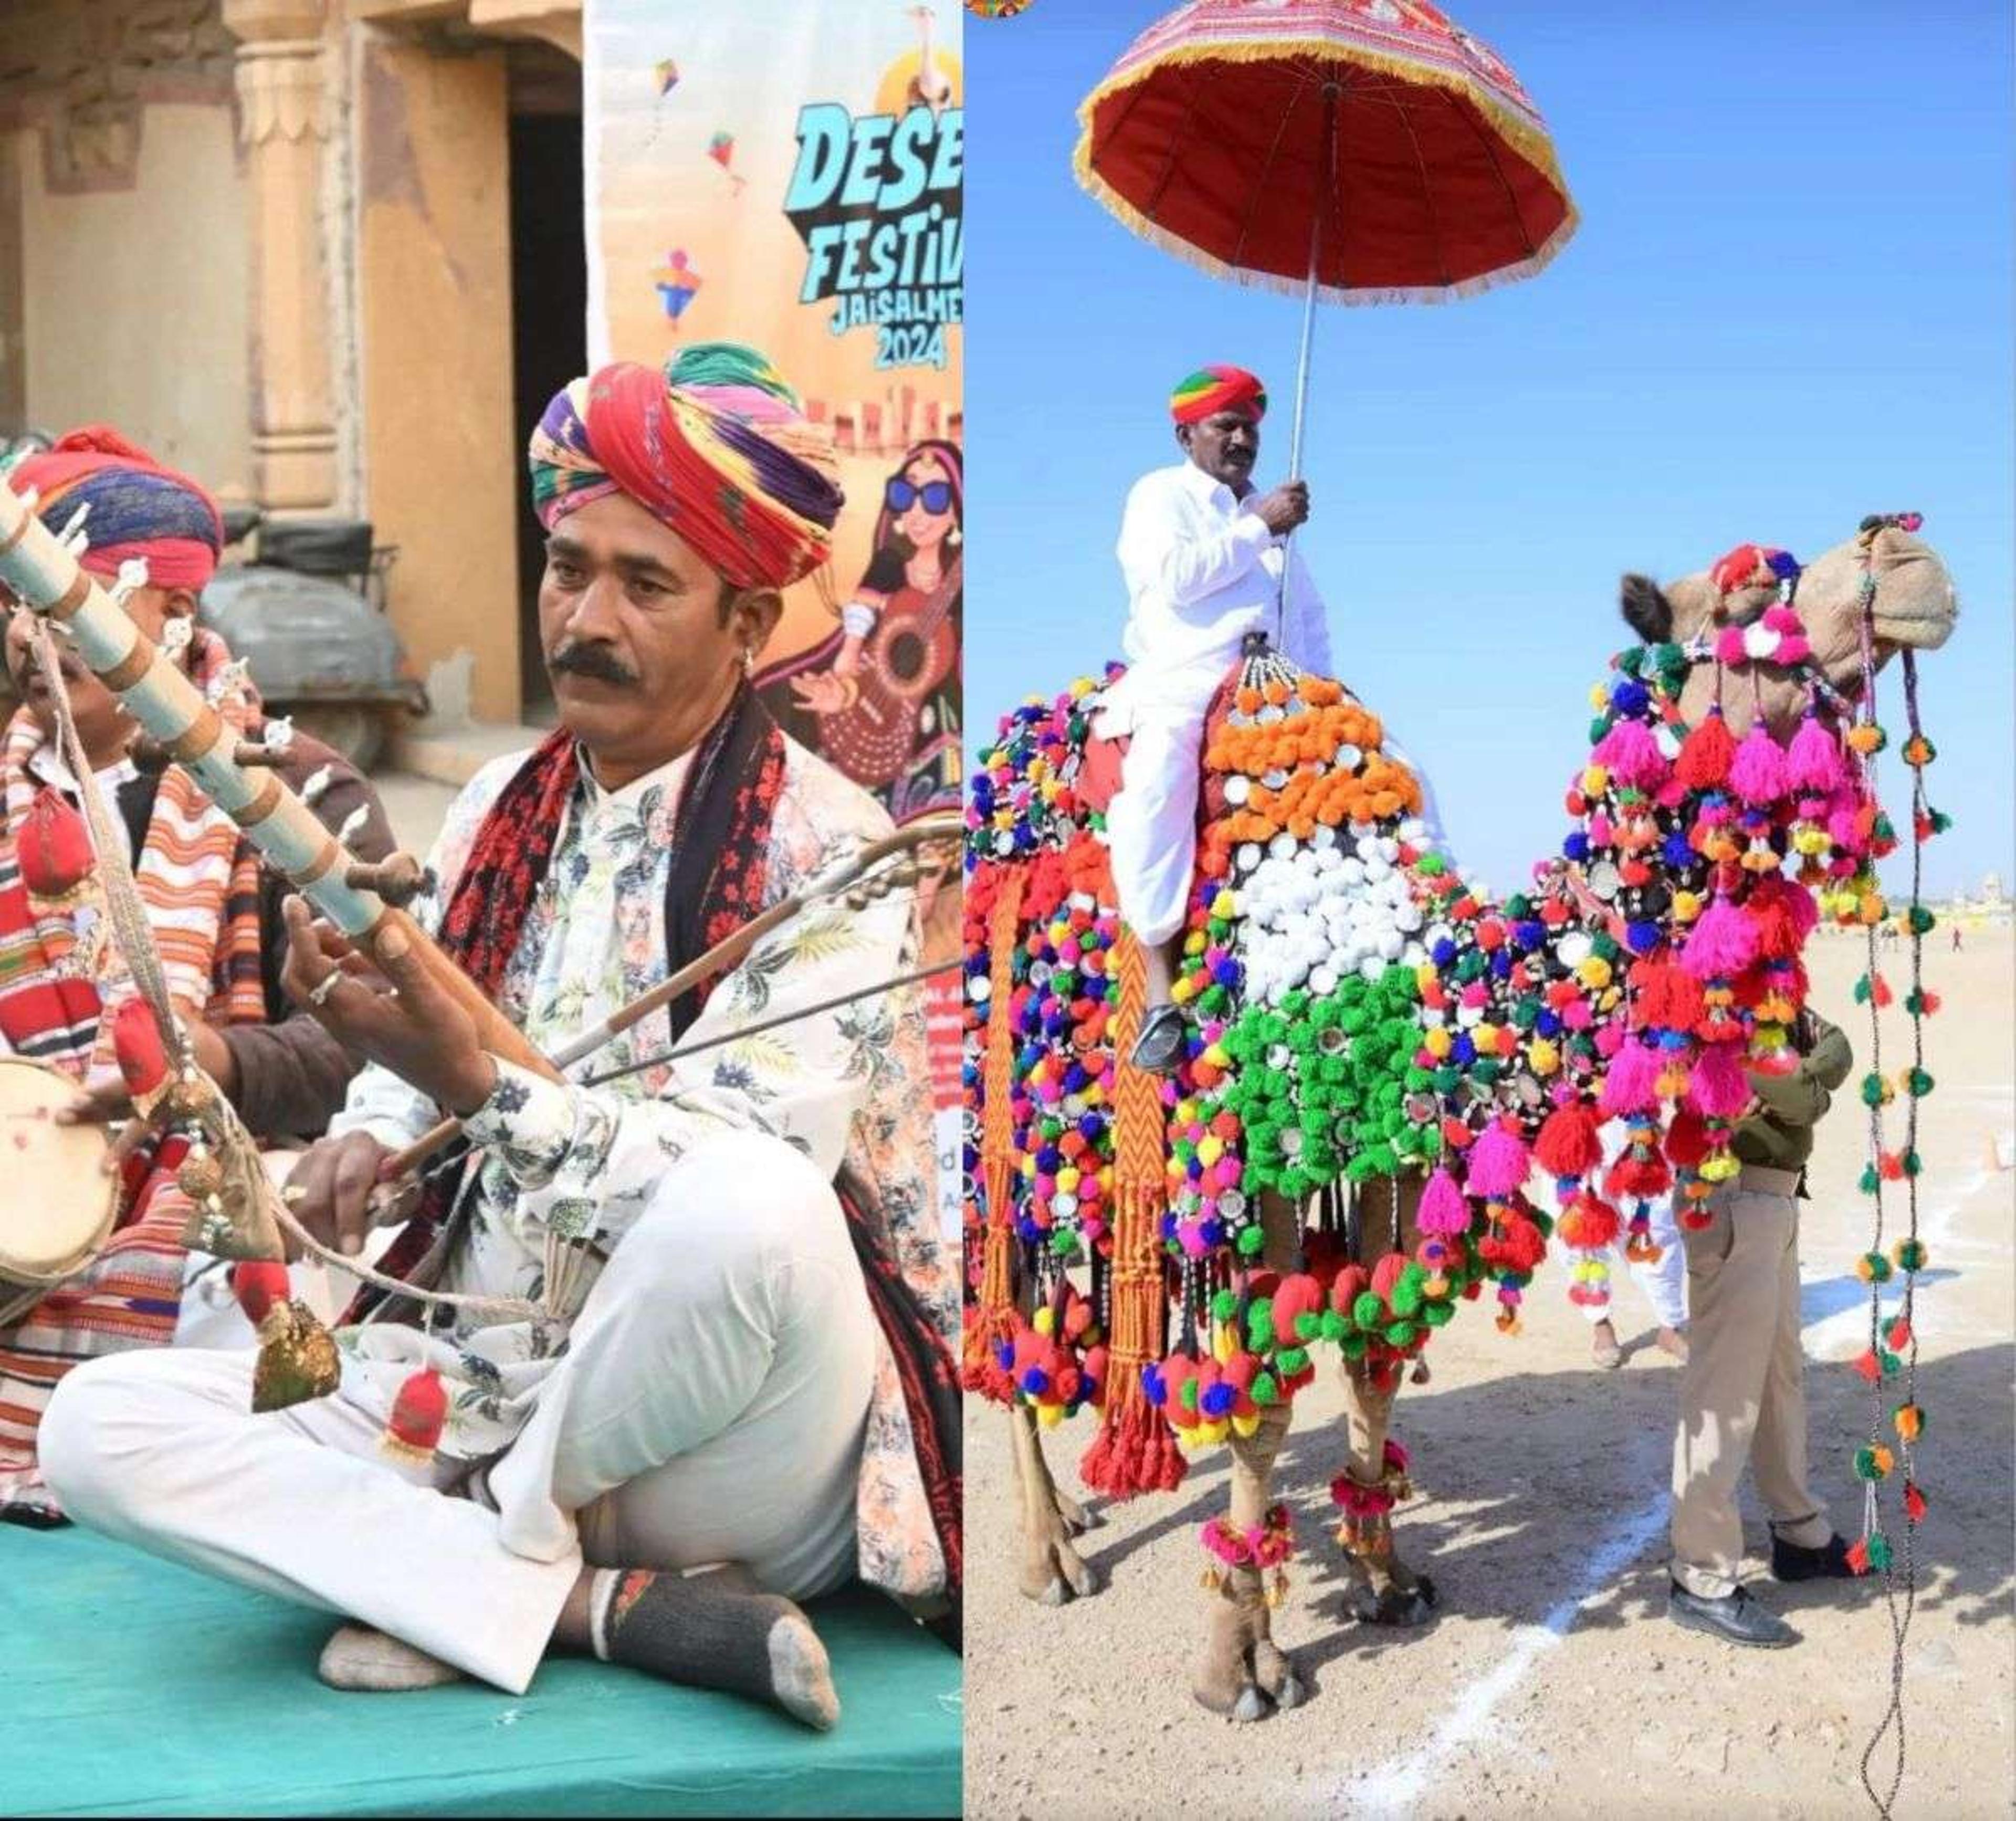 Jaisalmer Desert Festival : लोक-सूफी संगीत के जादू ने लोगों का मन मोहा, खूबसूरत तस्वीरें देखकर आप भी आनंद लीजिए